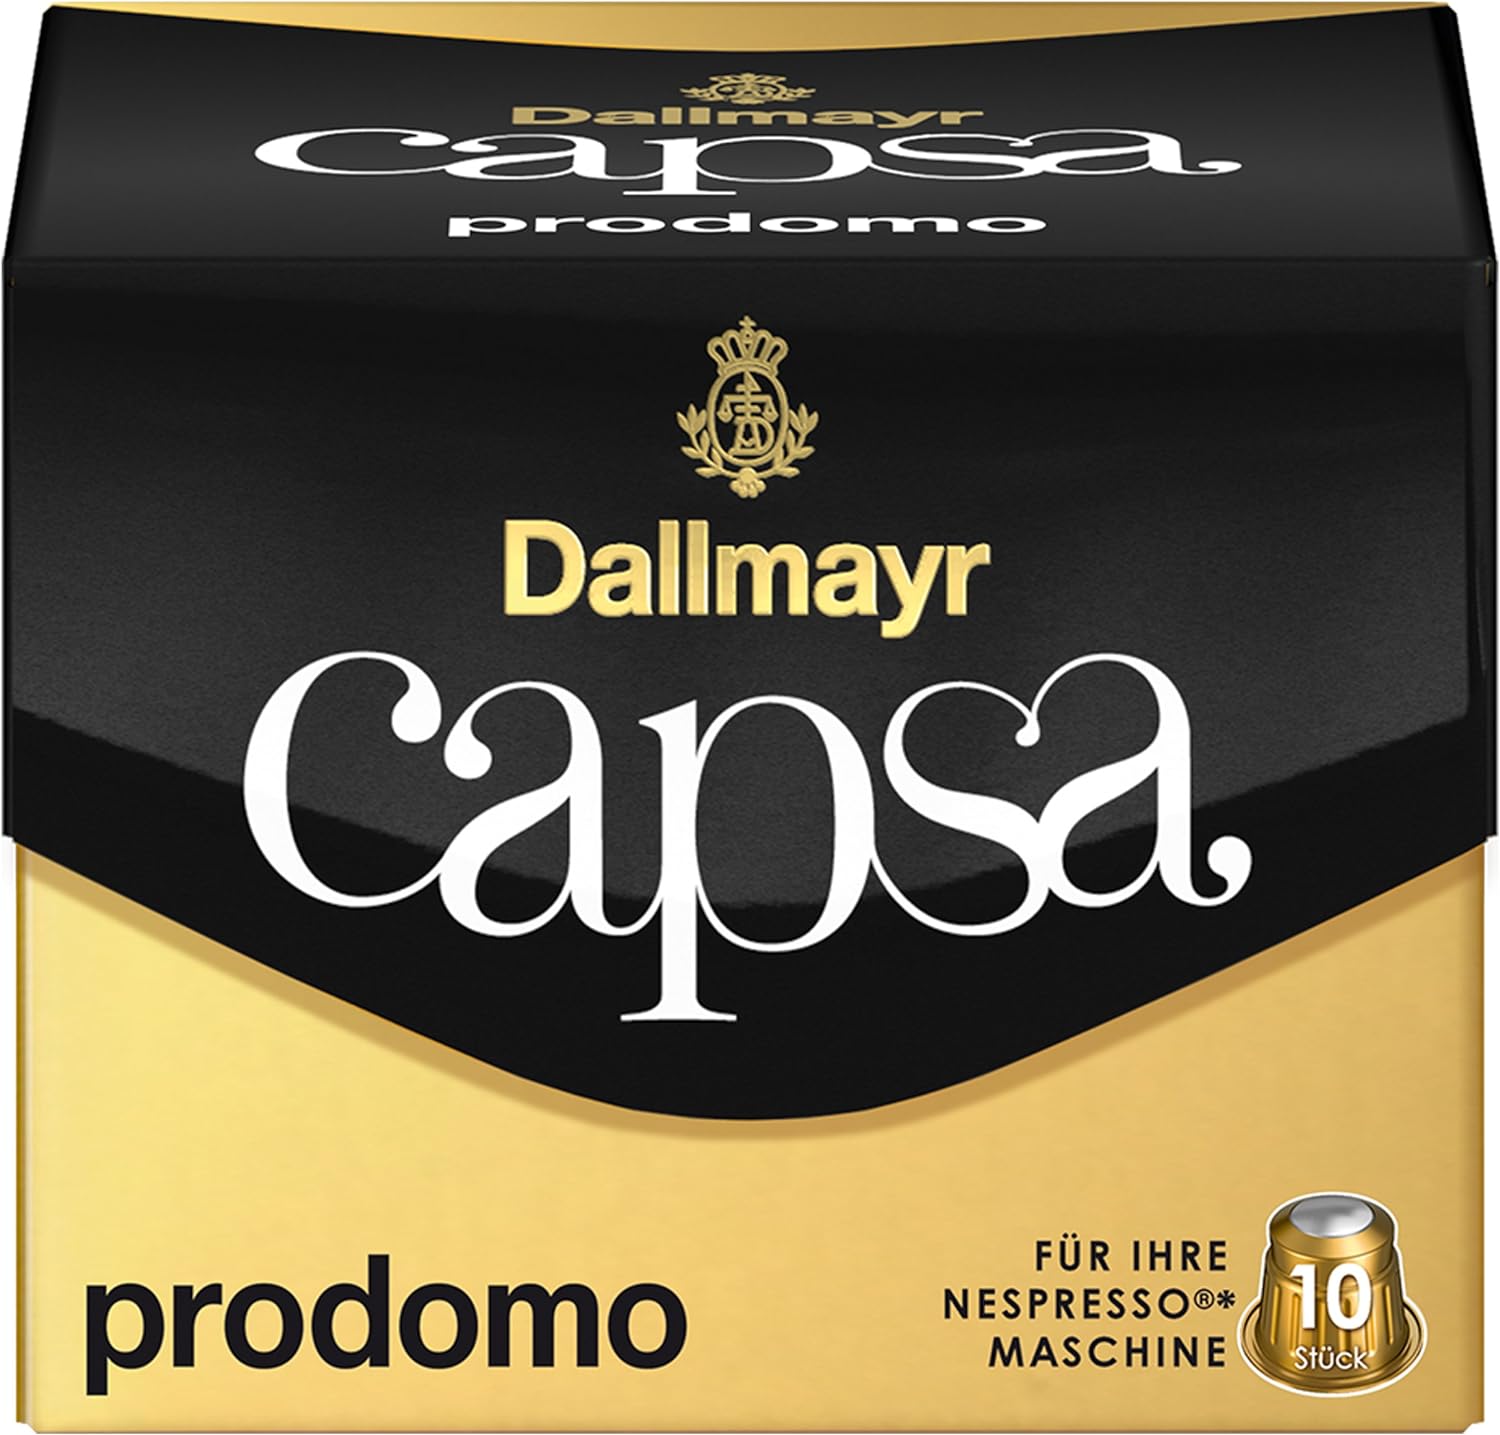 Dallmayr Capsa Prodomo, Nespresso Compatible Capsules, Coffee Capsules, Arabica Roasted Coffee, Coffee, 100 Capsules